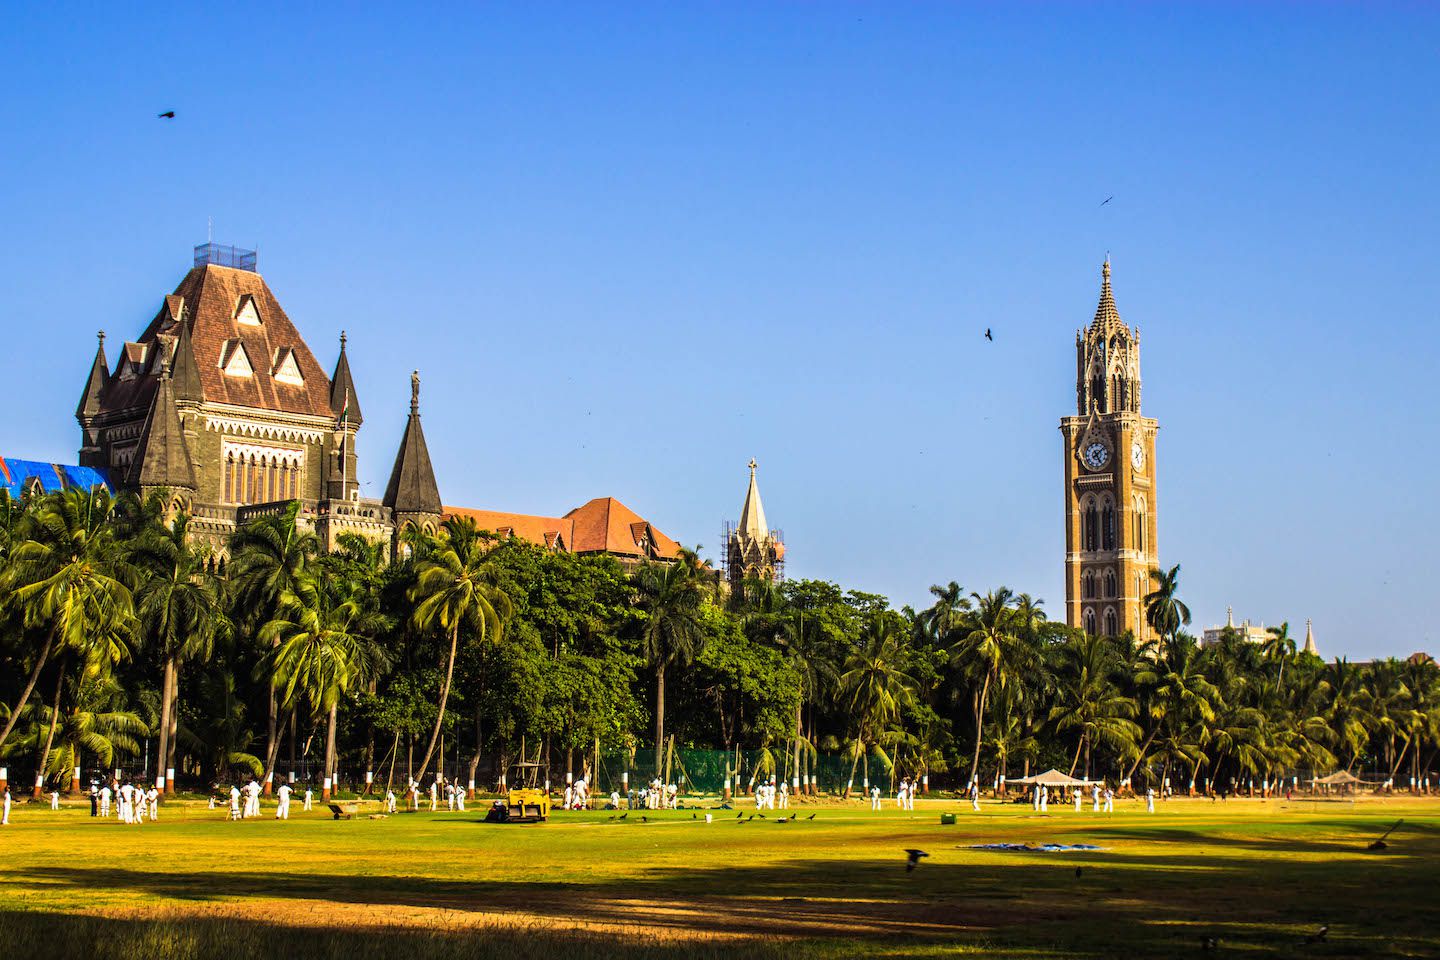 Mumbai High Court and Rajabai Clock Tower, Mumbai, India